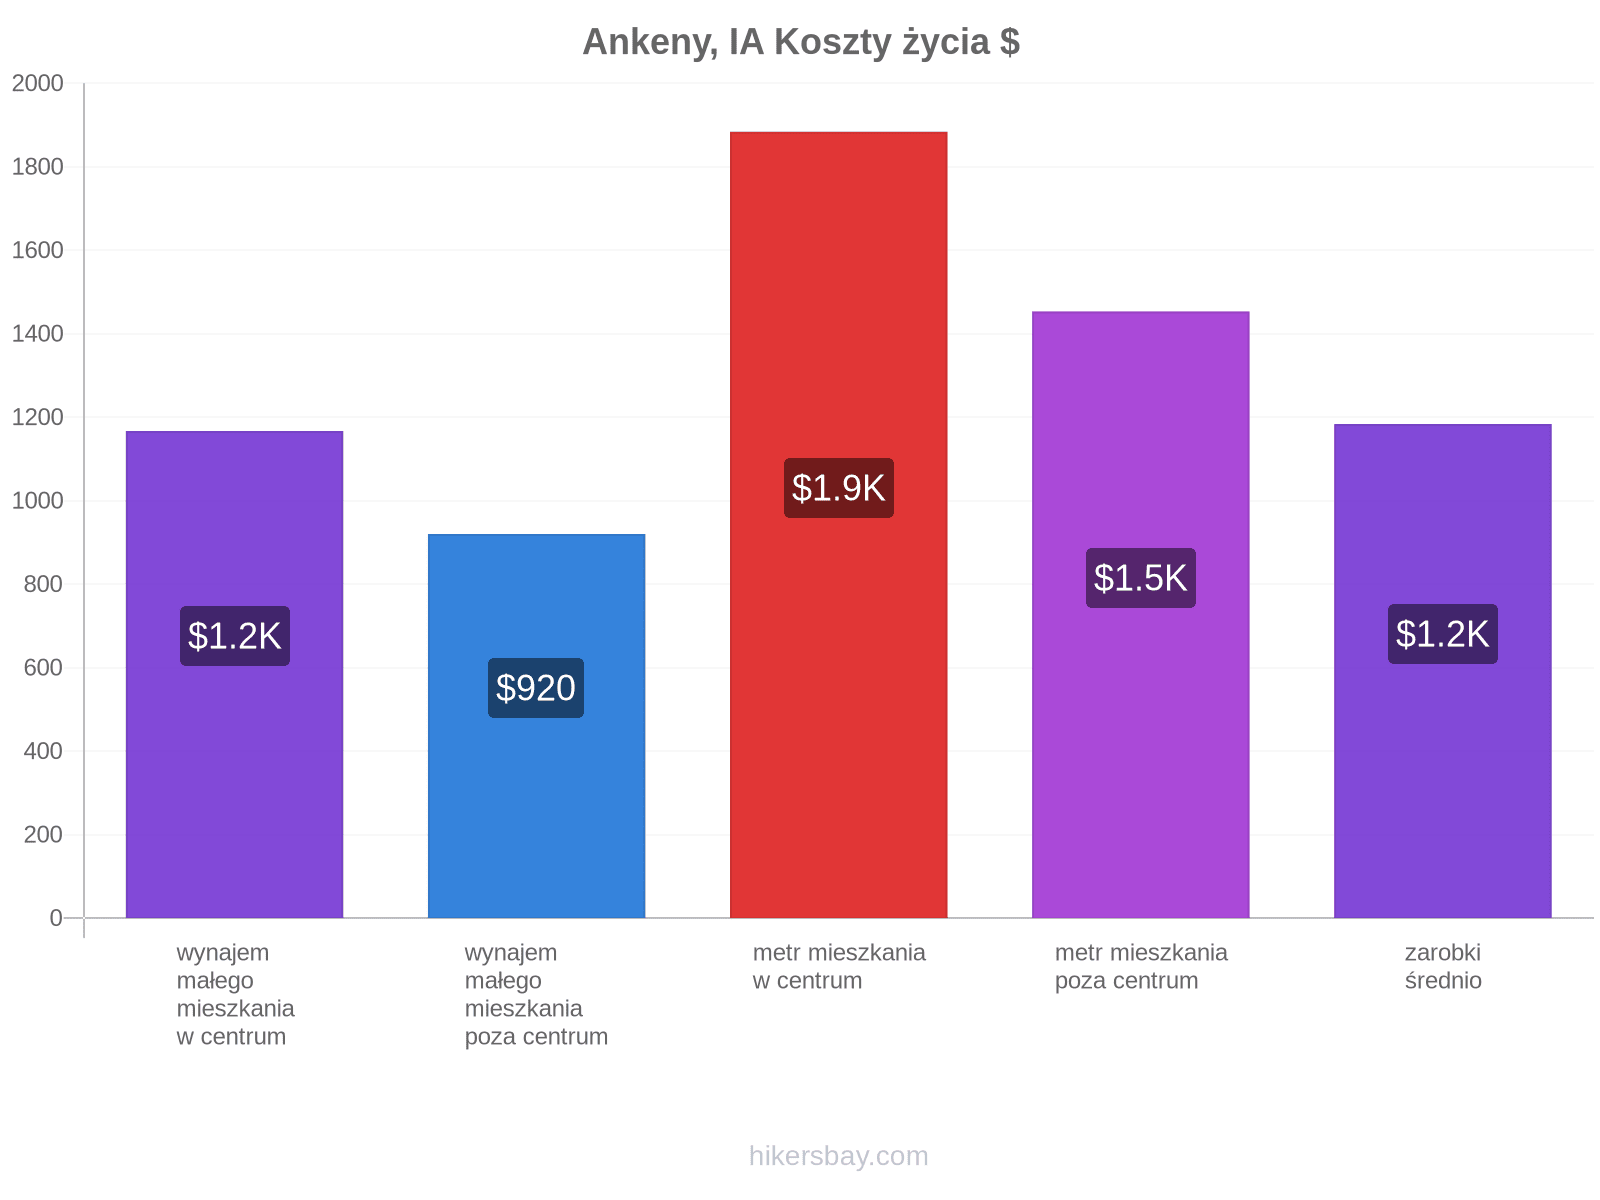 Ankeny, IA koszty życia hikersbay.com